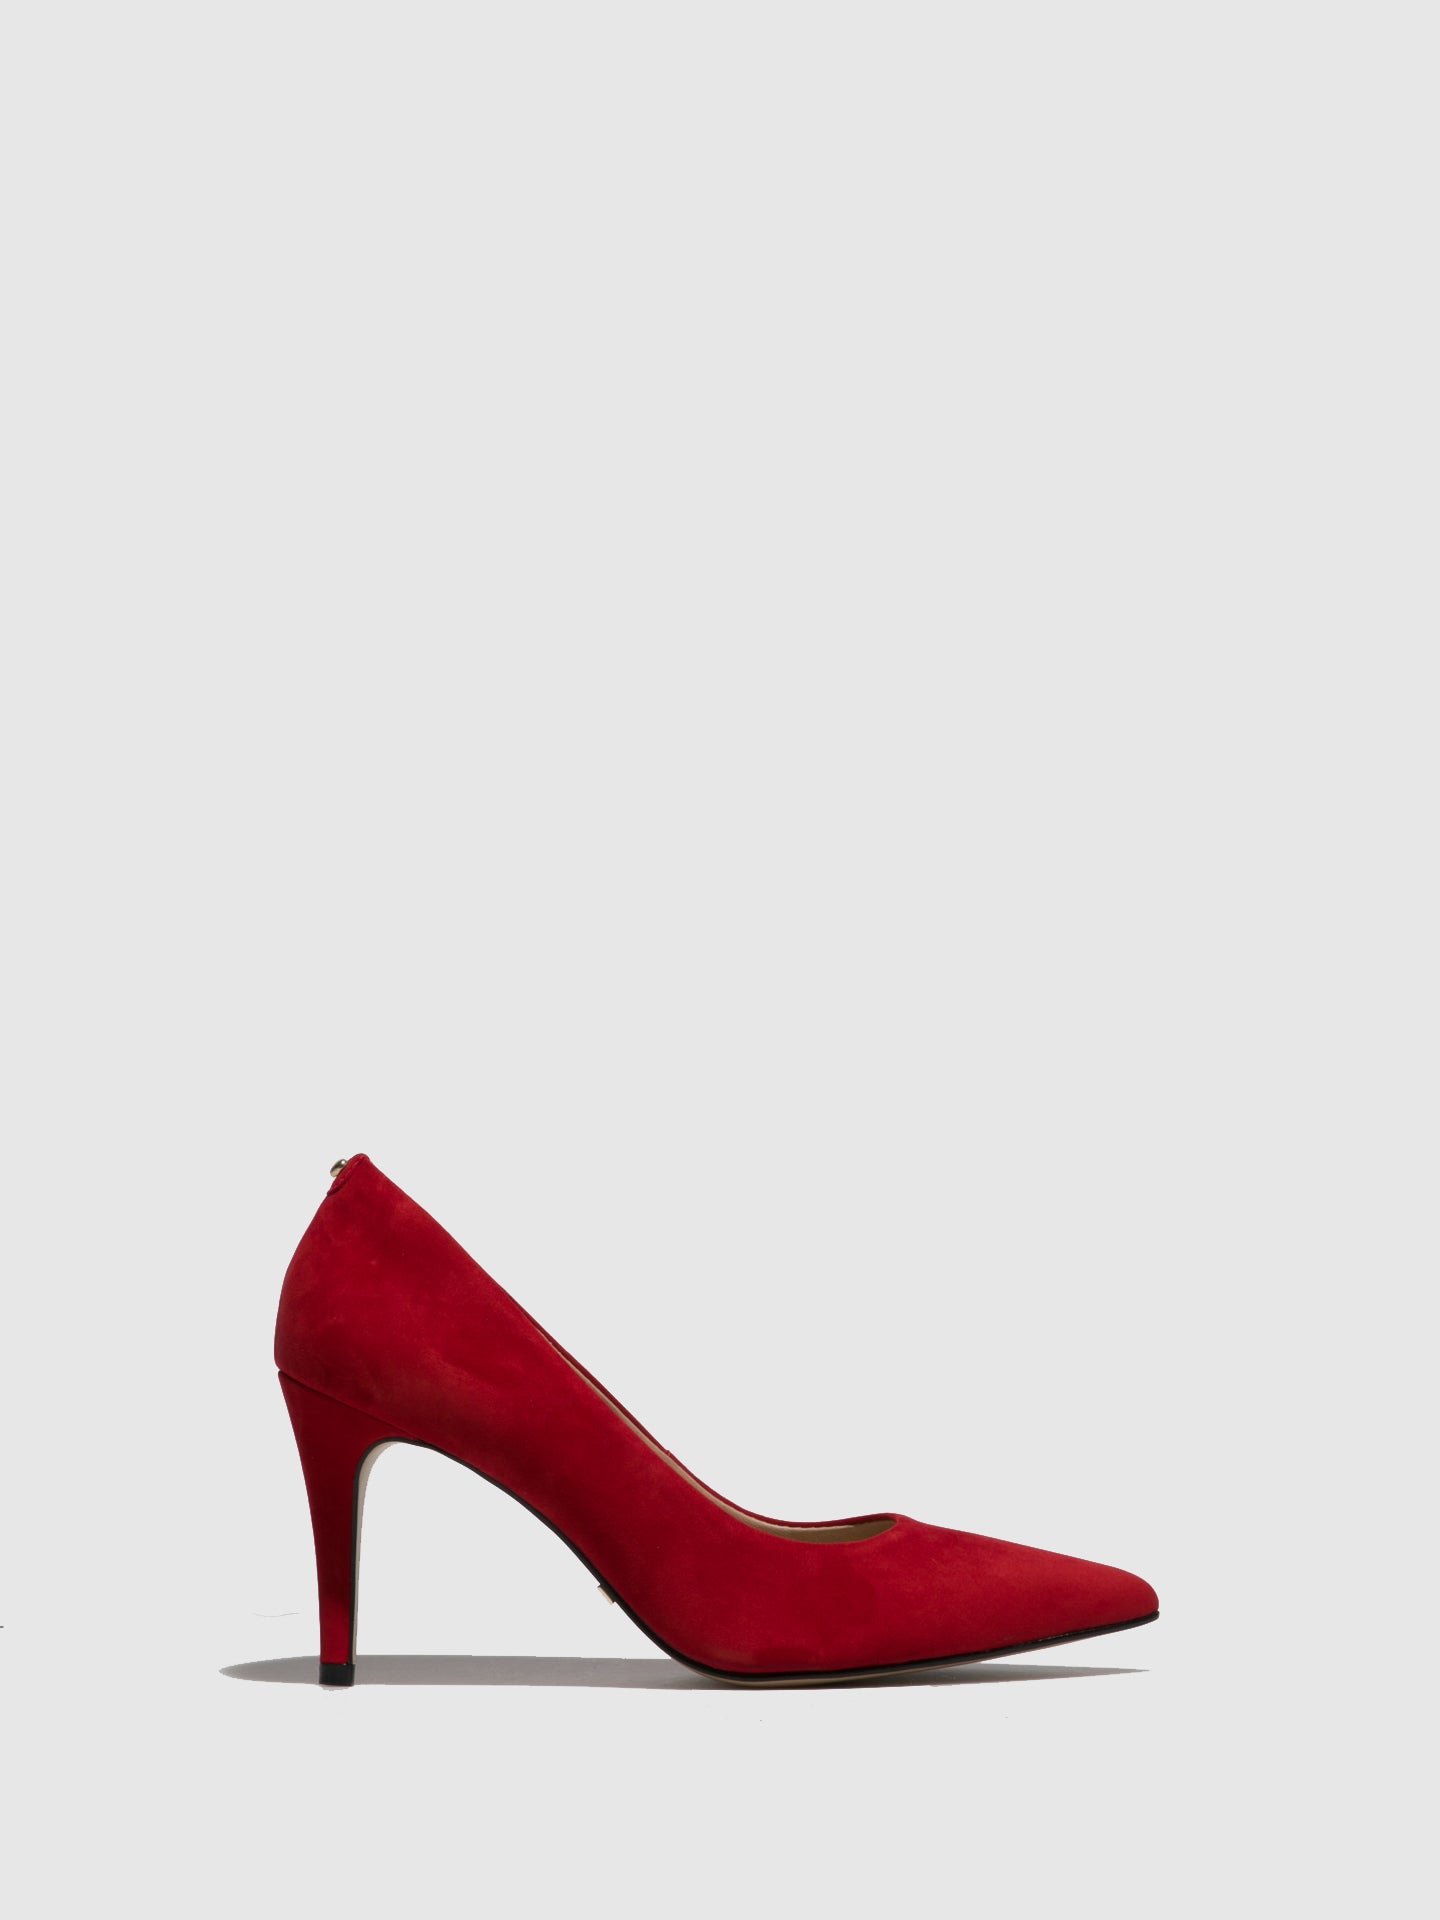 Parodi Stiletto Red Suede Stiletto Shoes